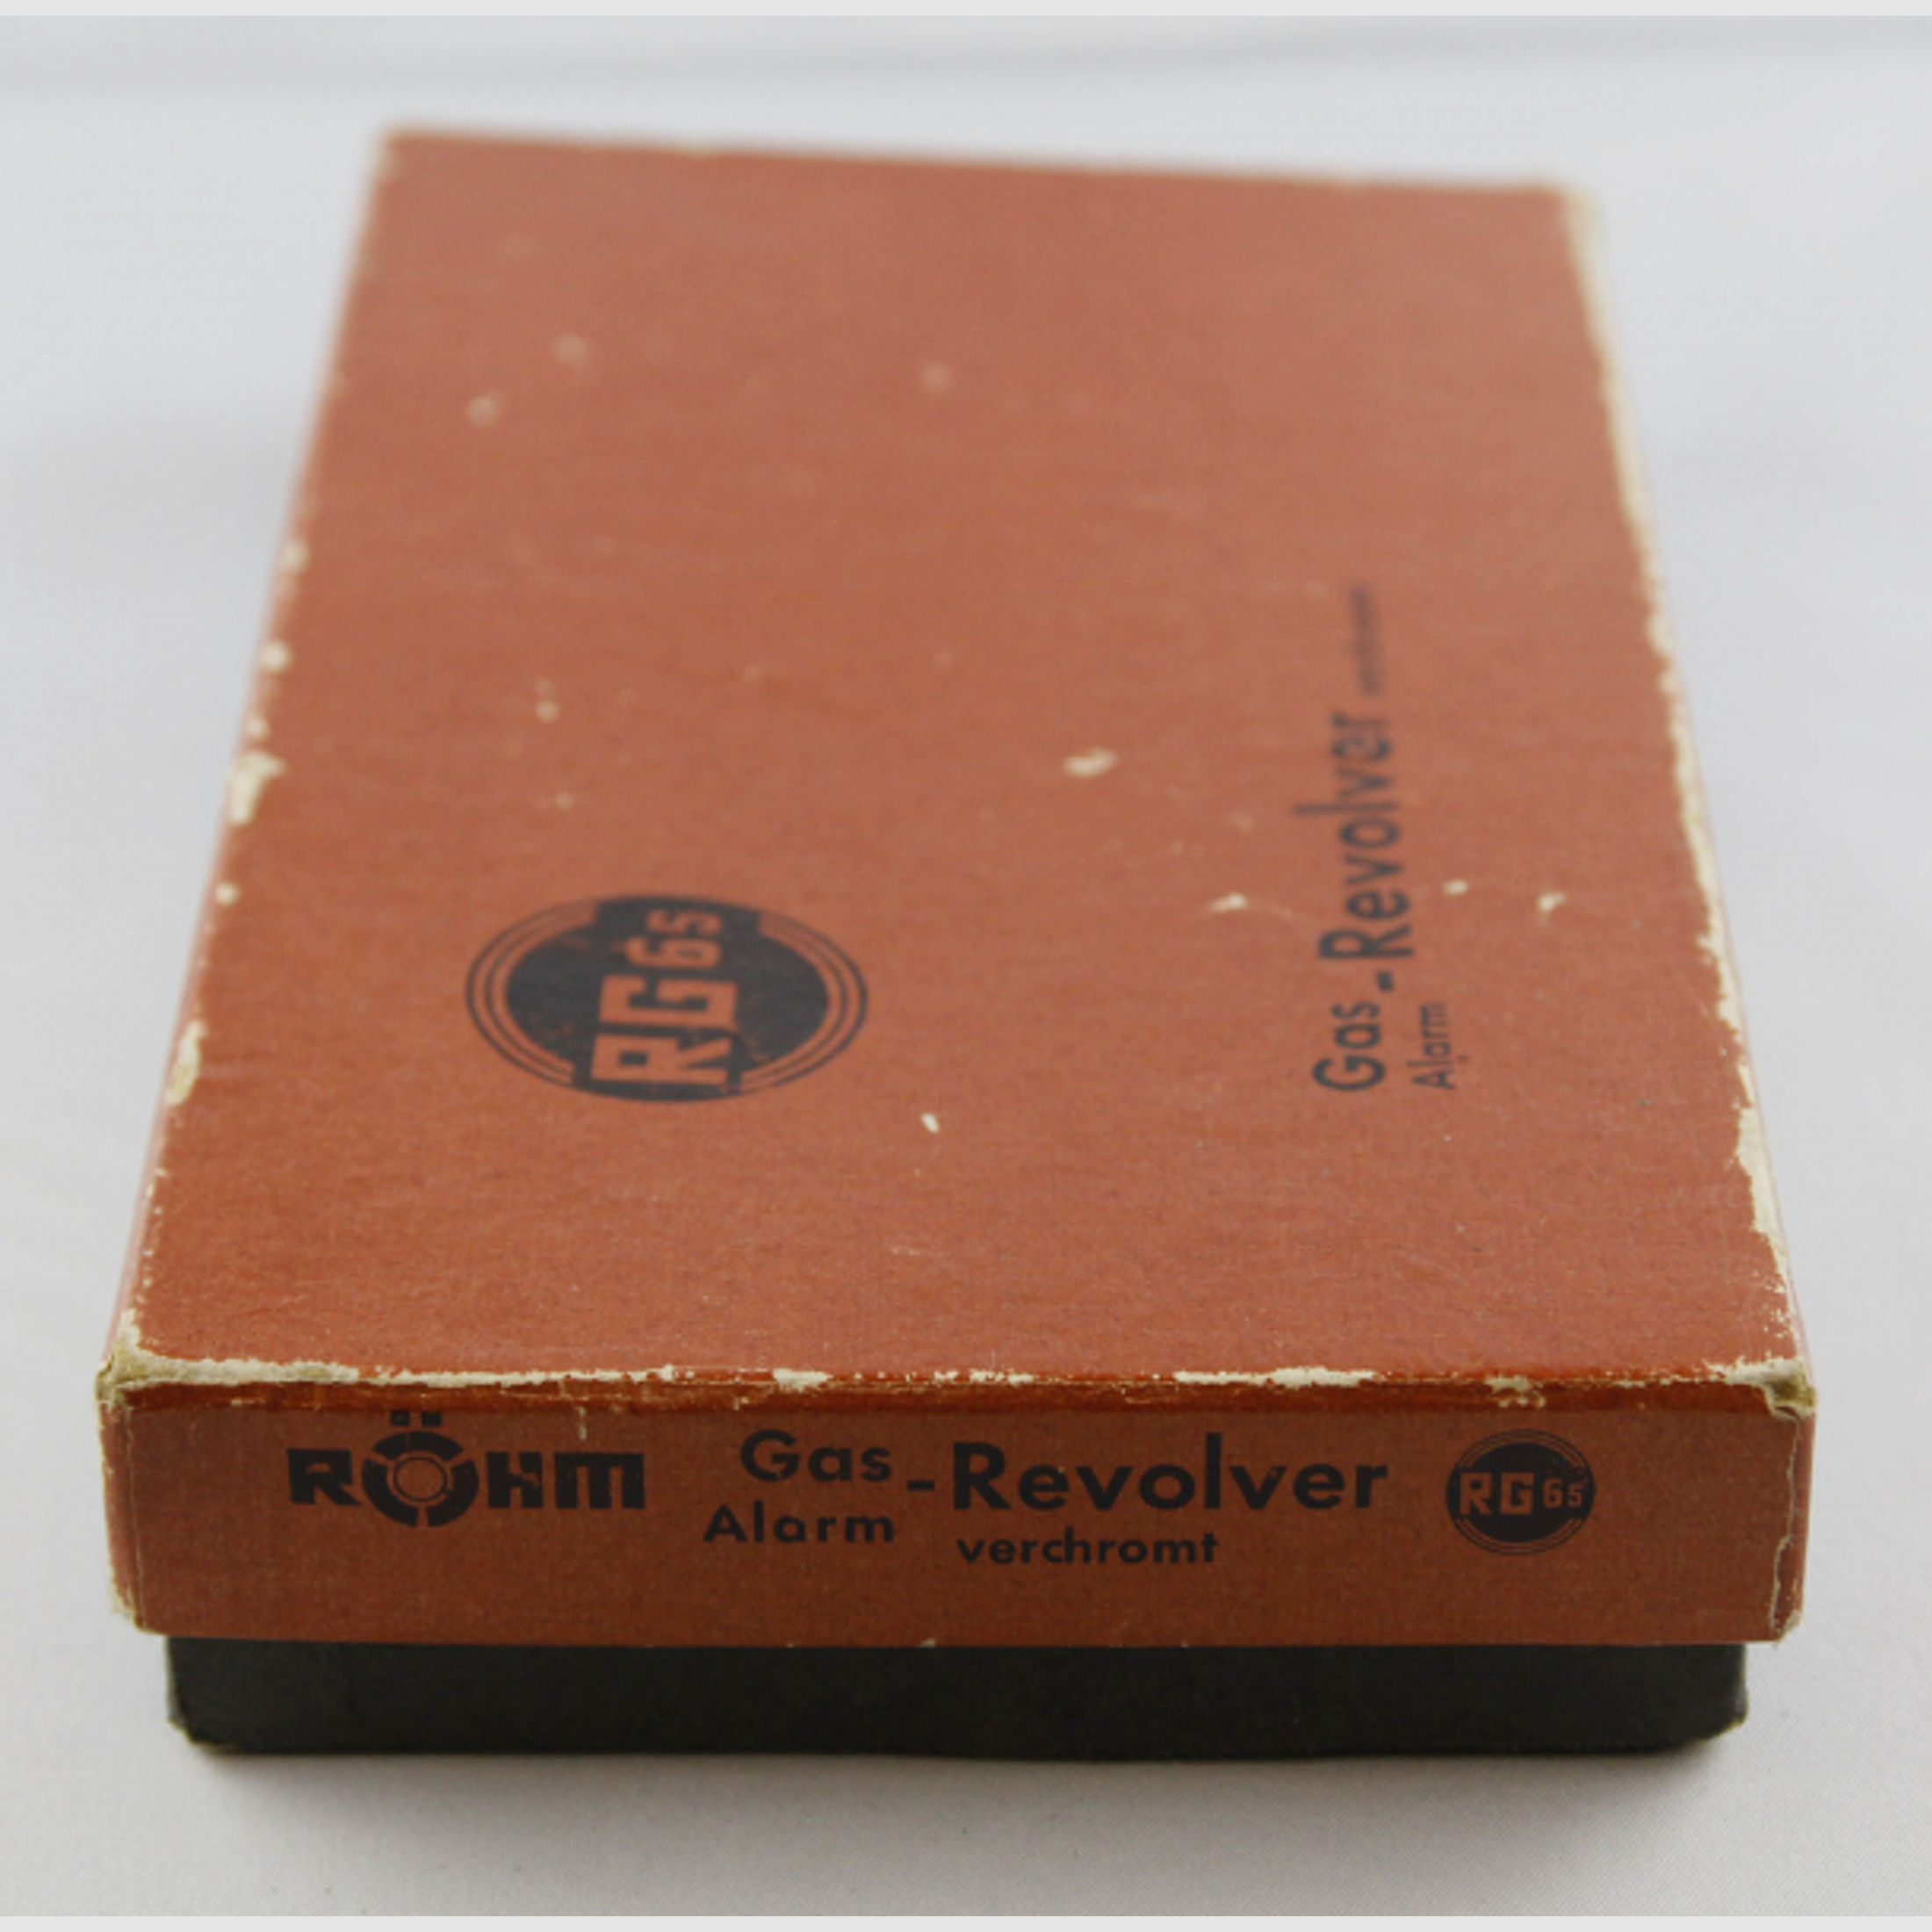 Röhm Revolver RG 6 S Vernickelt in Originalkarton